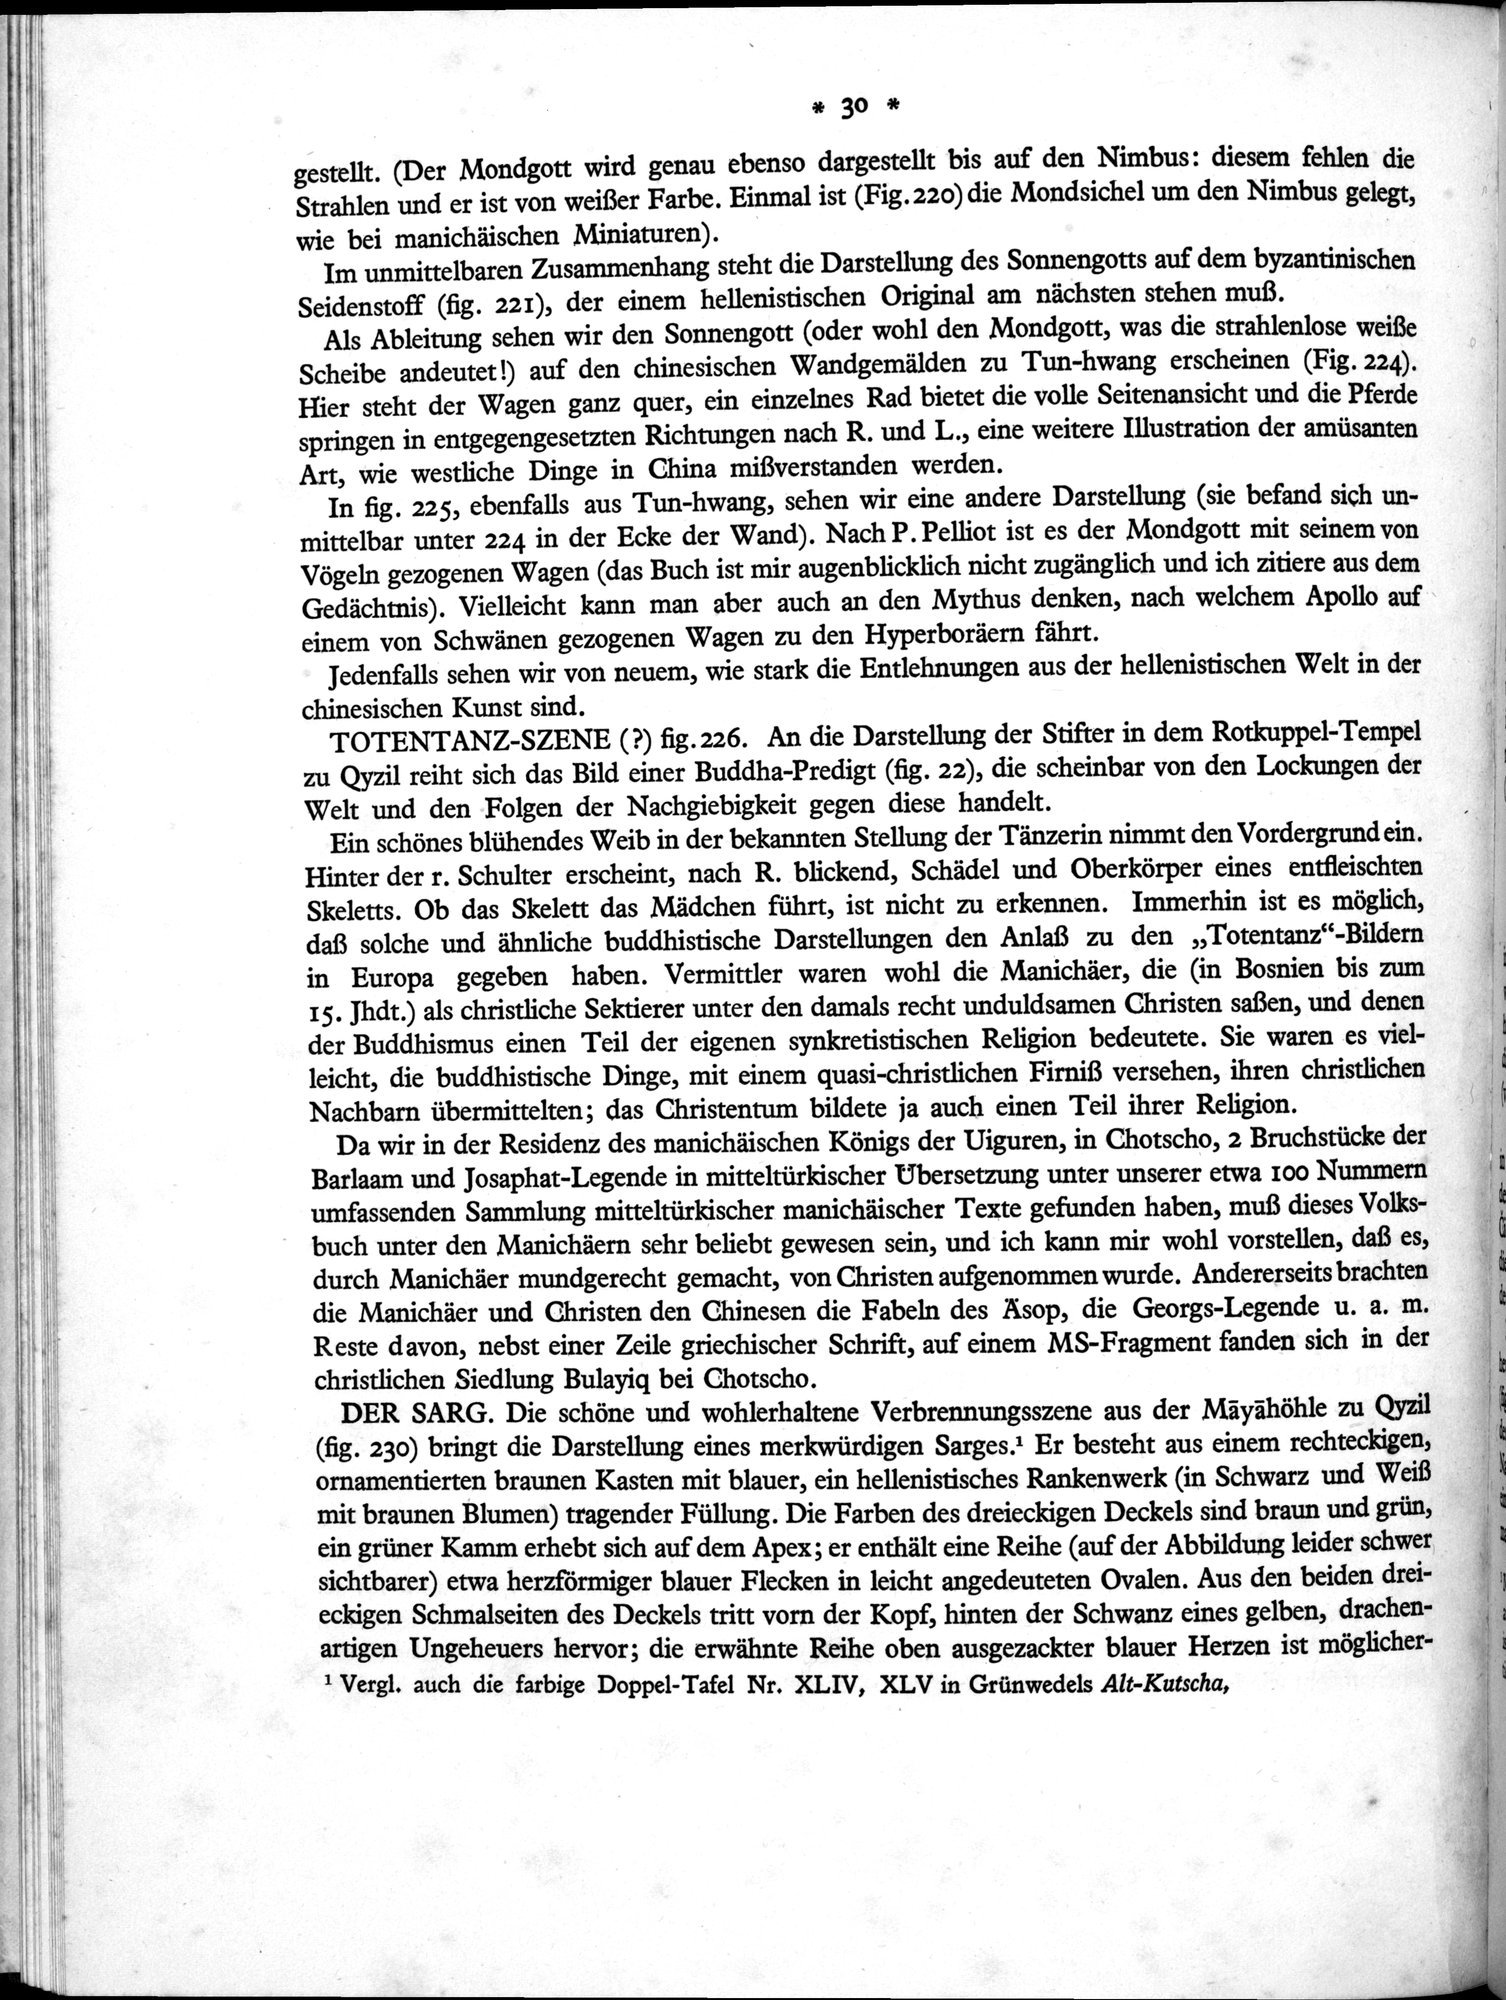 Bilderatlas zur Kunst und Kulturgeschichte Mittel-Asiens : vol.1 / Page 34 (Grayscale High Resolution Image)